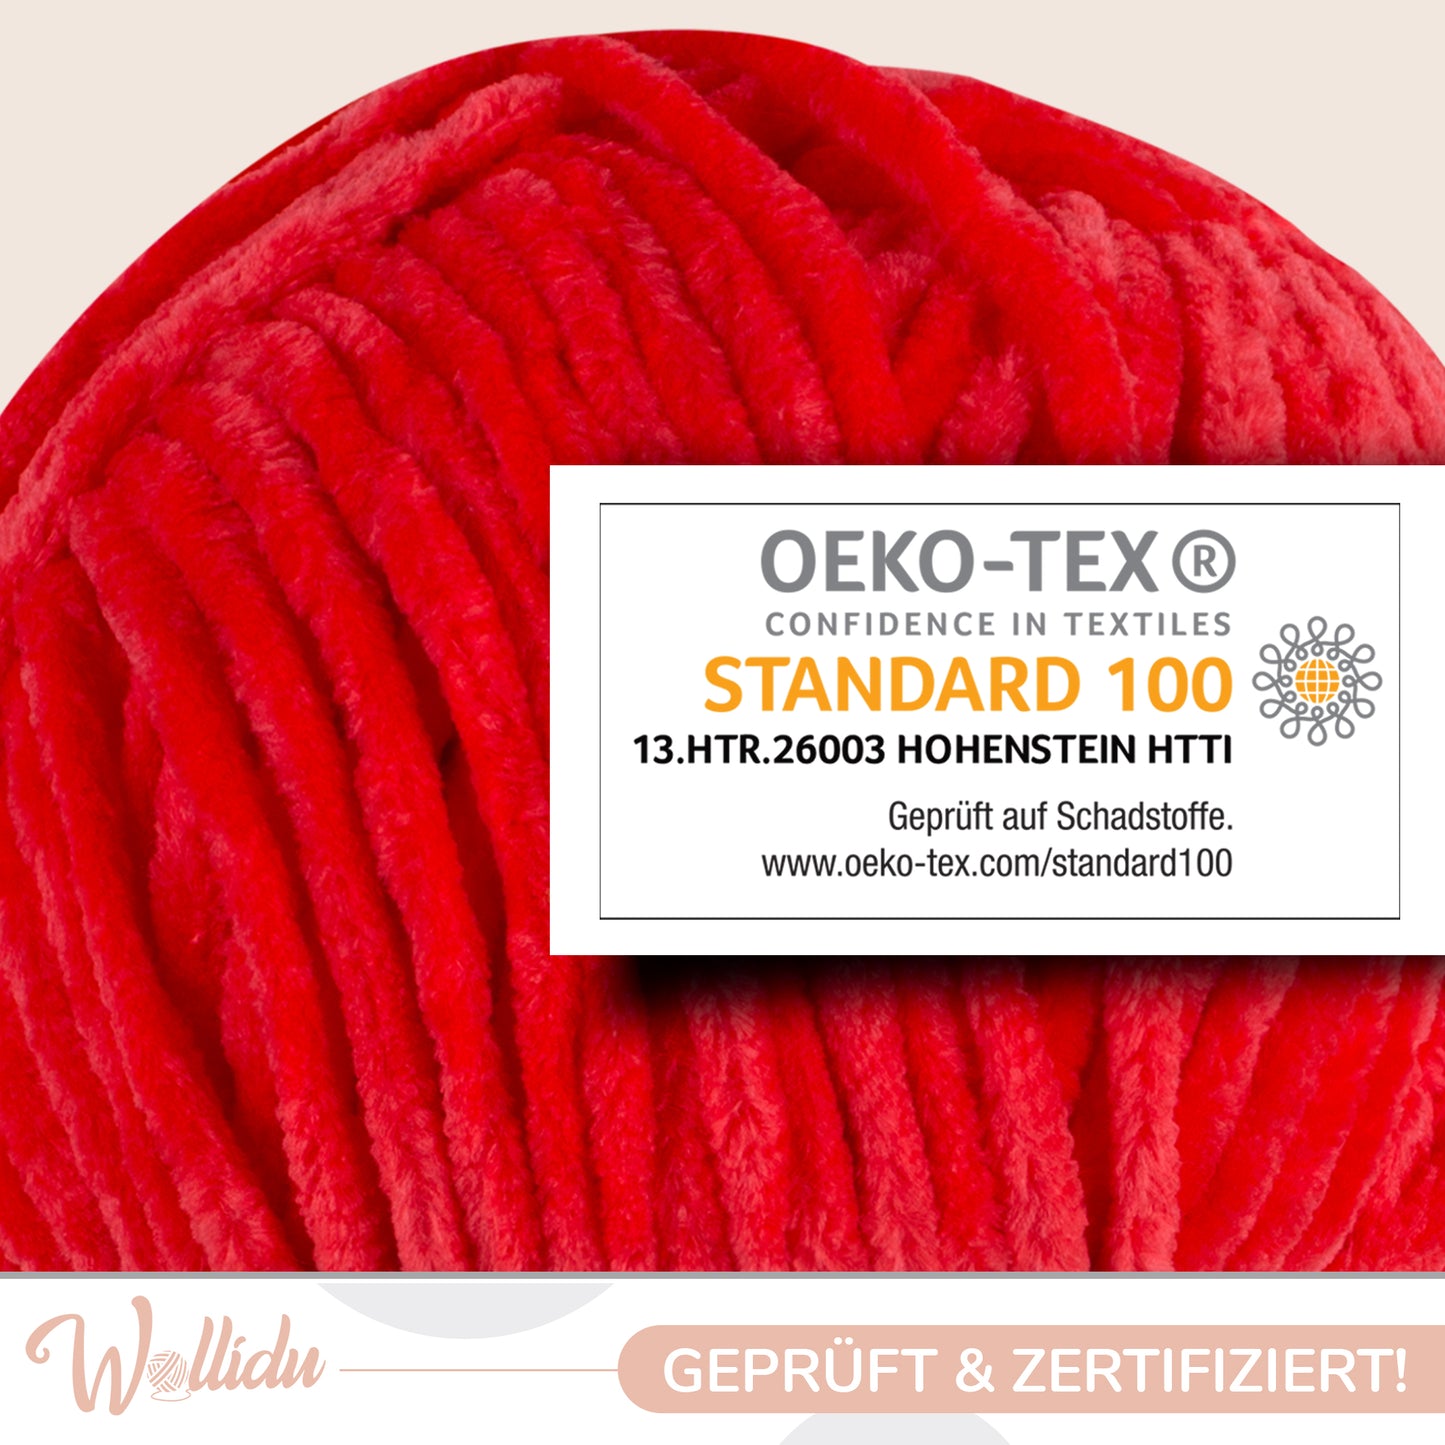 Wollidu Gina 100% Polyester 5 x 100g/120m - Rot